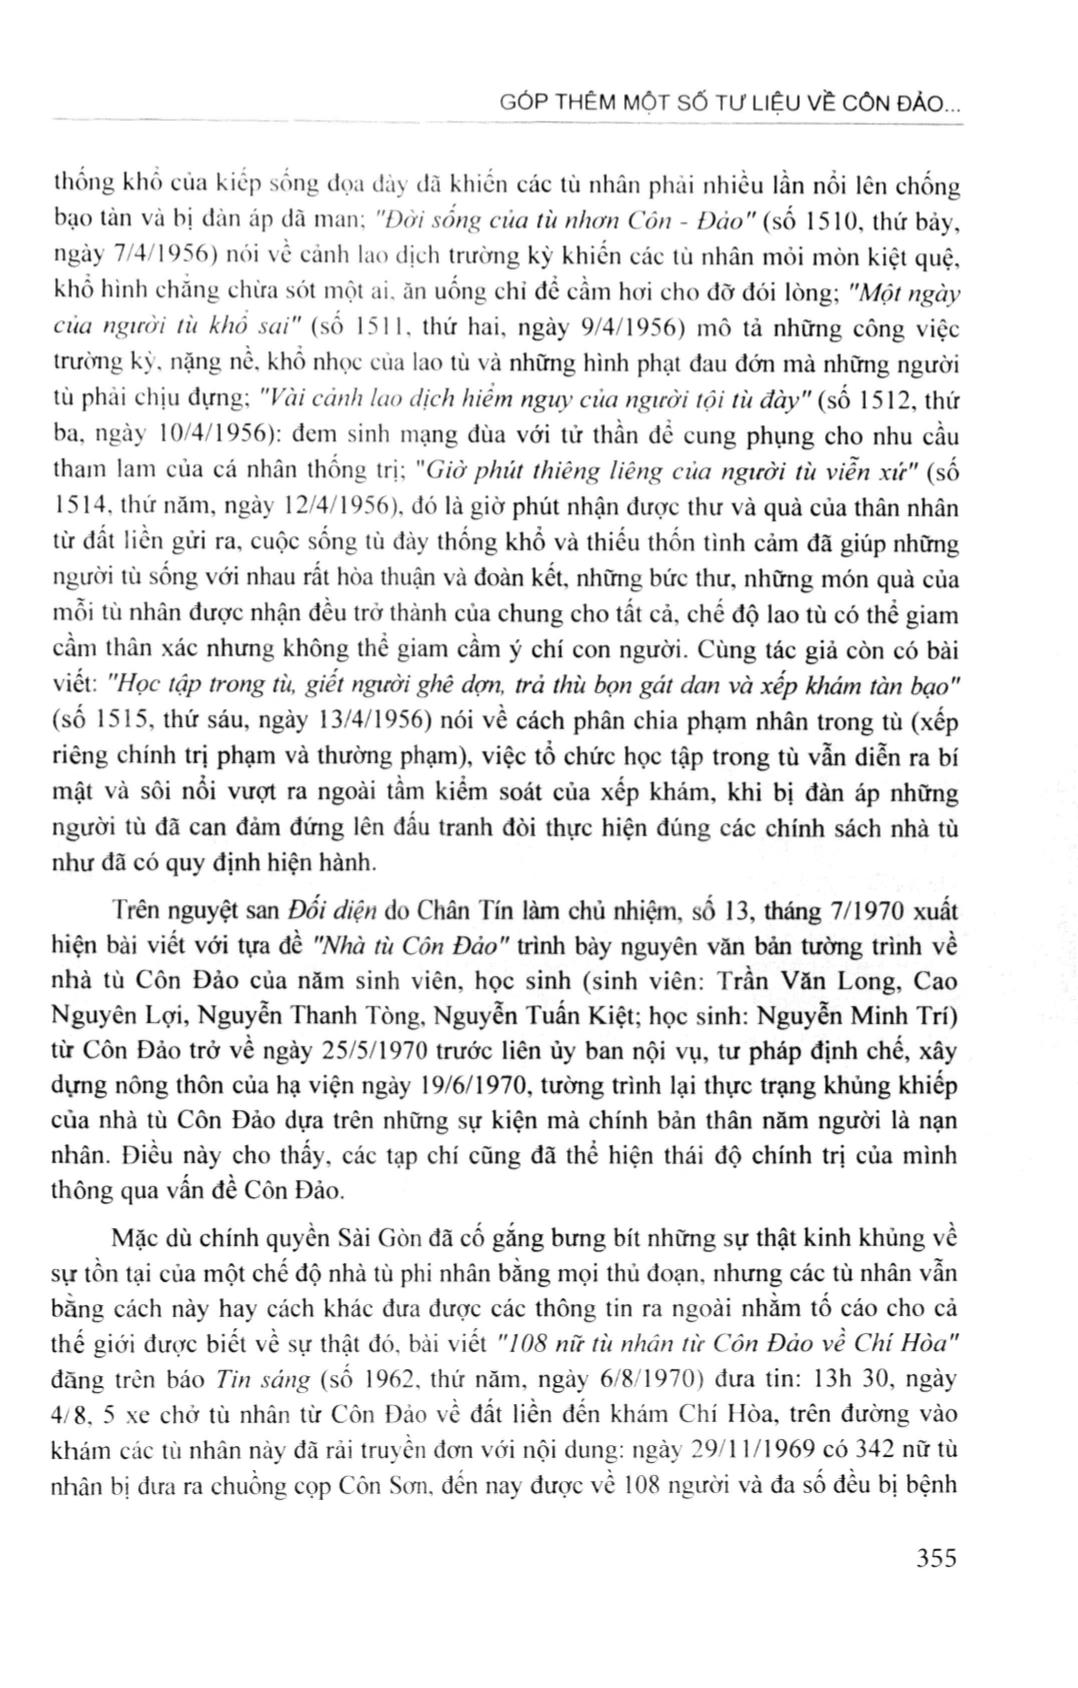 Góp thêm một số tư liệu về Côn Đảo (Từ cách nhìn của báo chí Sài Gòn trước 1975) trang 8